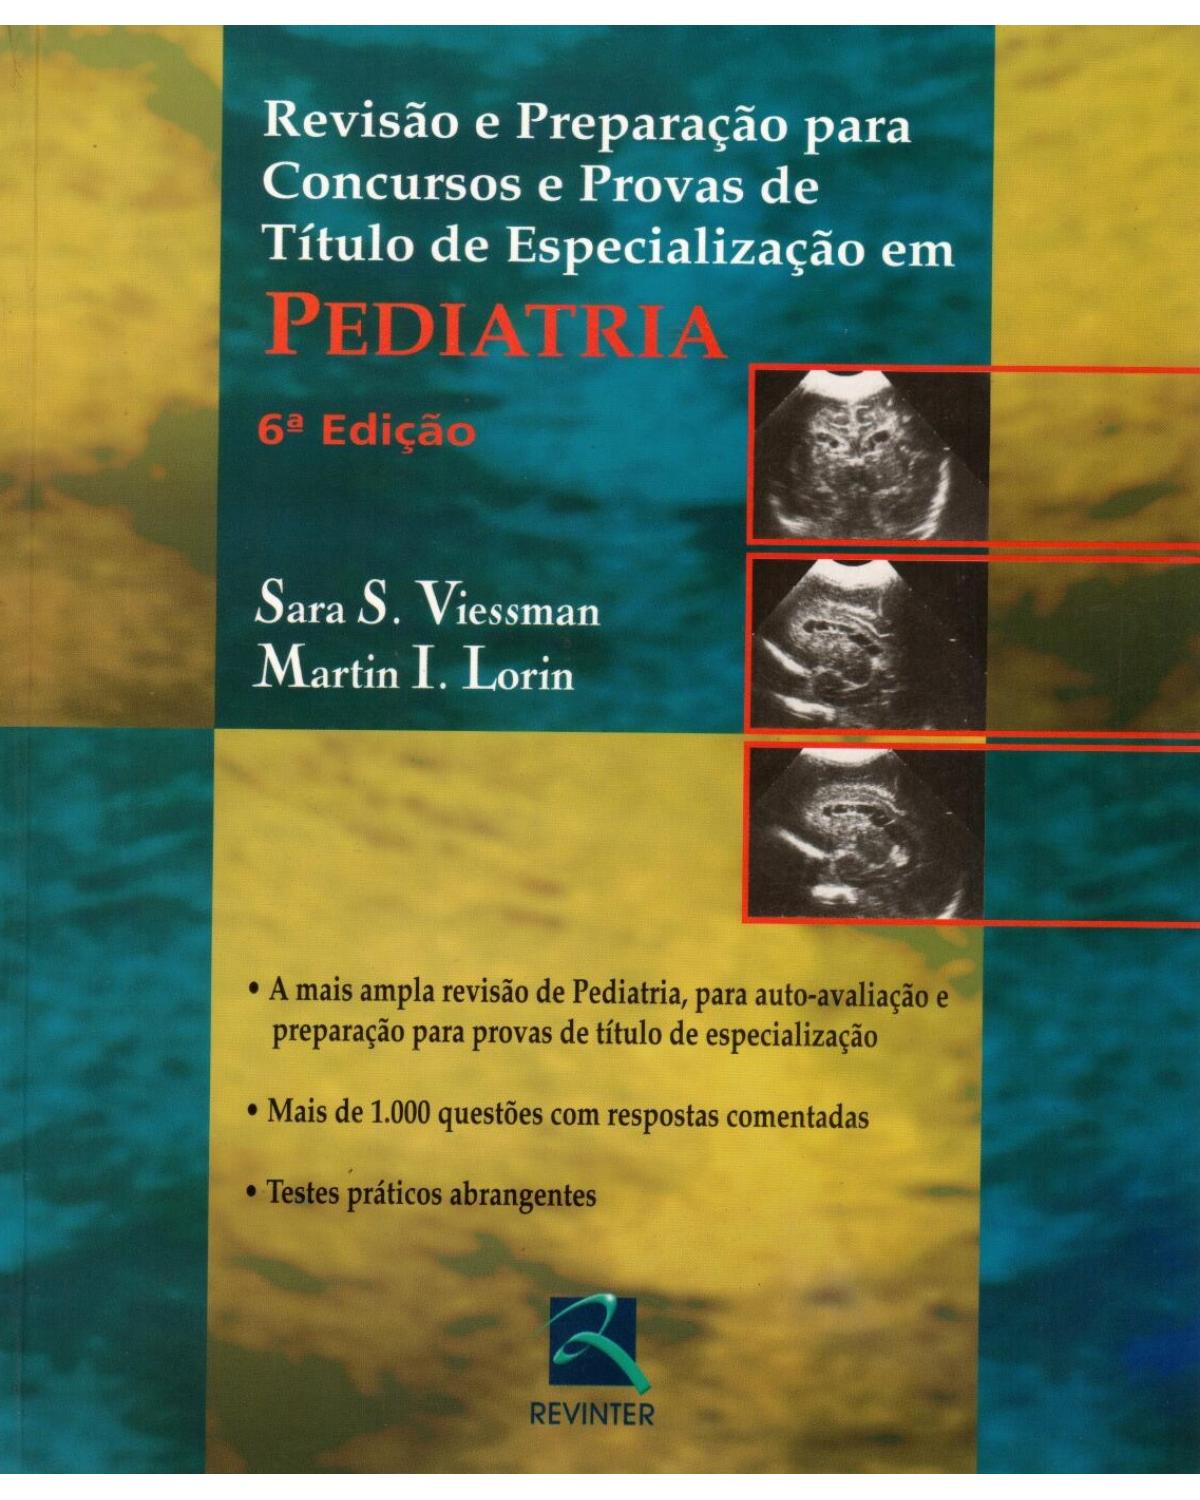 Pediatria - revisão e preparação para concursos e provas de título de especialização - 6ª Edição | 2005